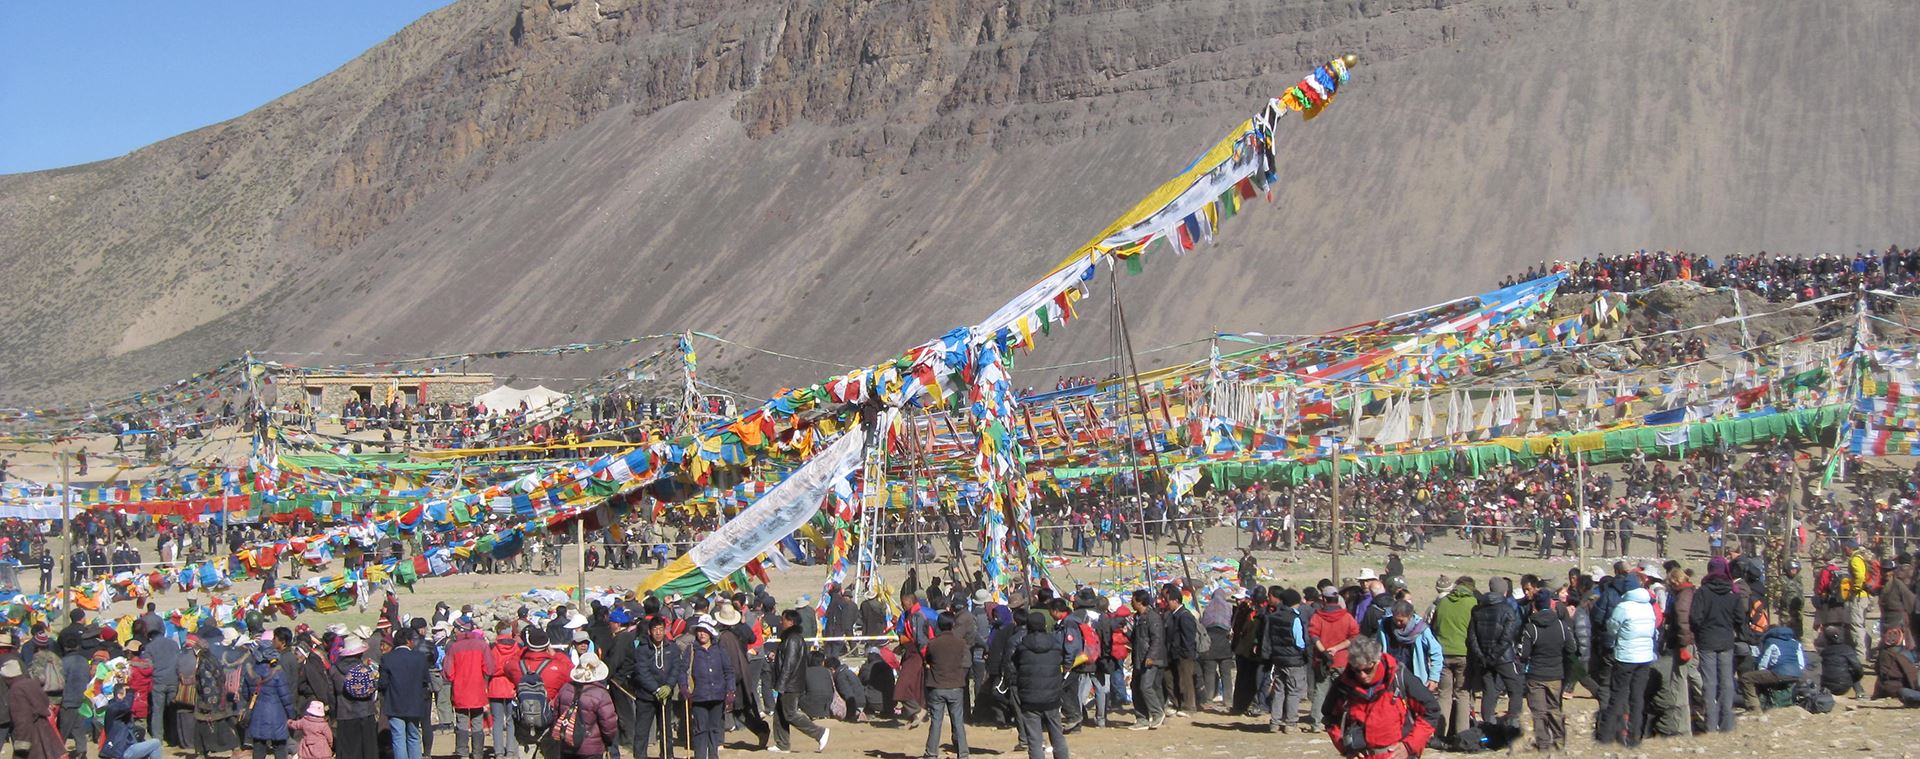 Découvrez l'Everest et Trekking à Kailash pendant la Fête Saga Dawa 2021